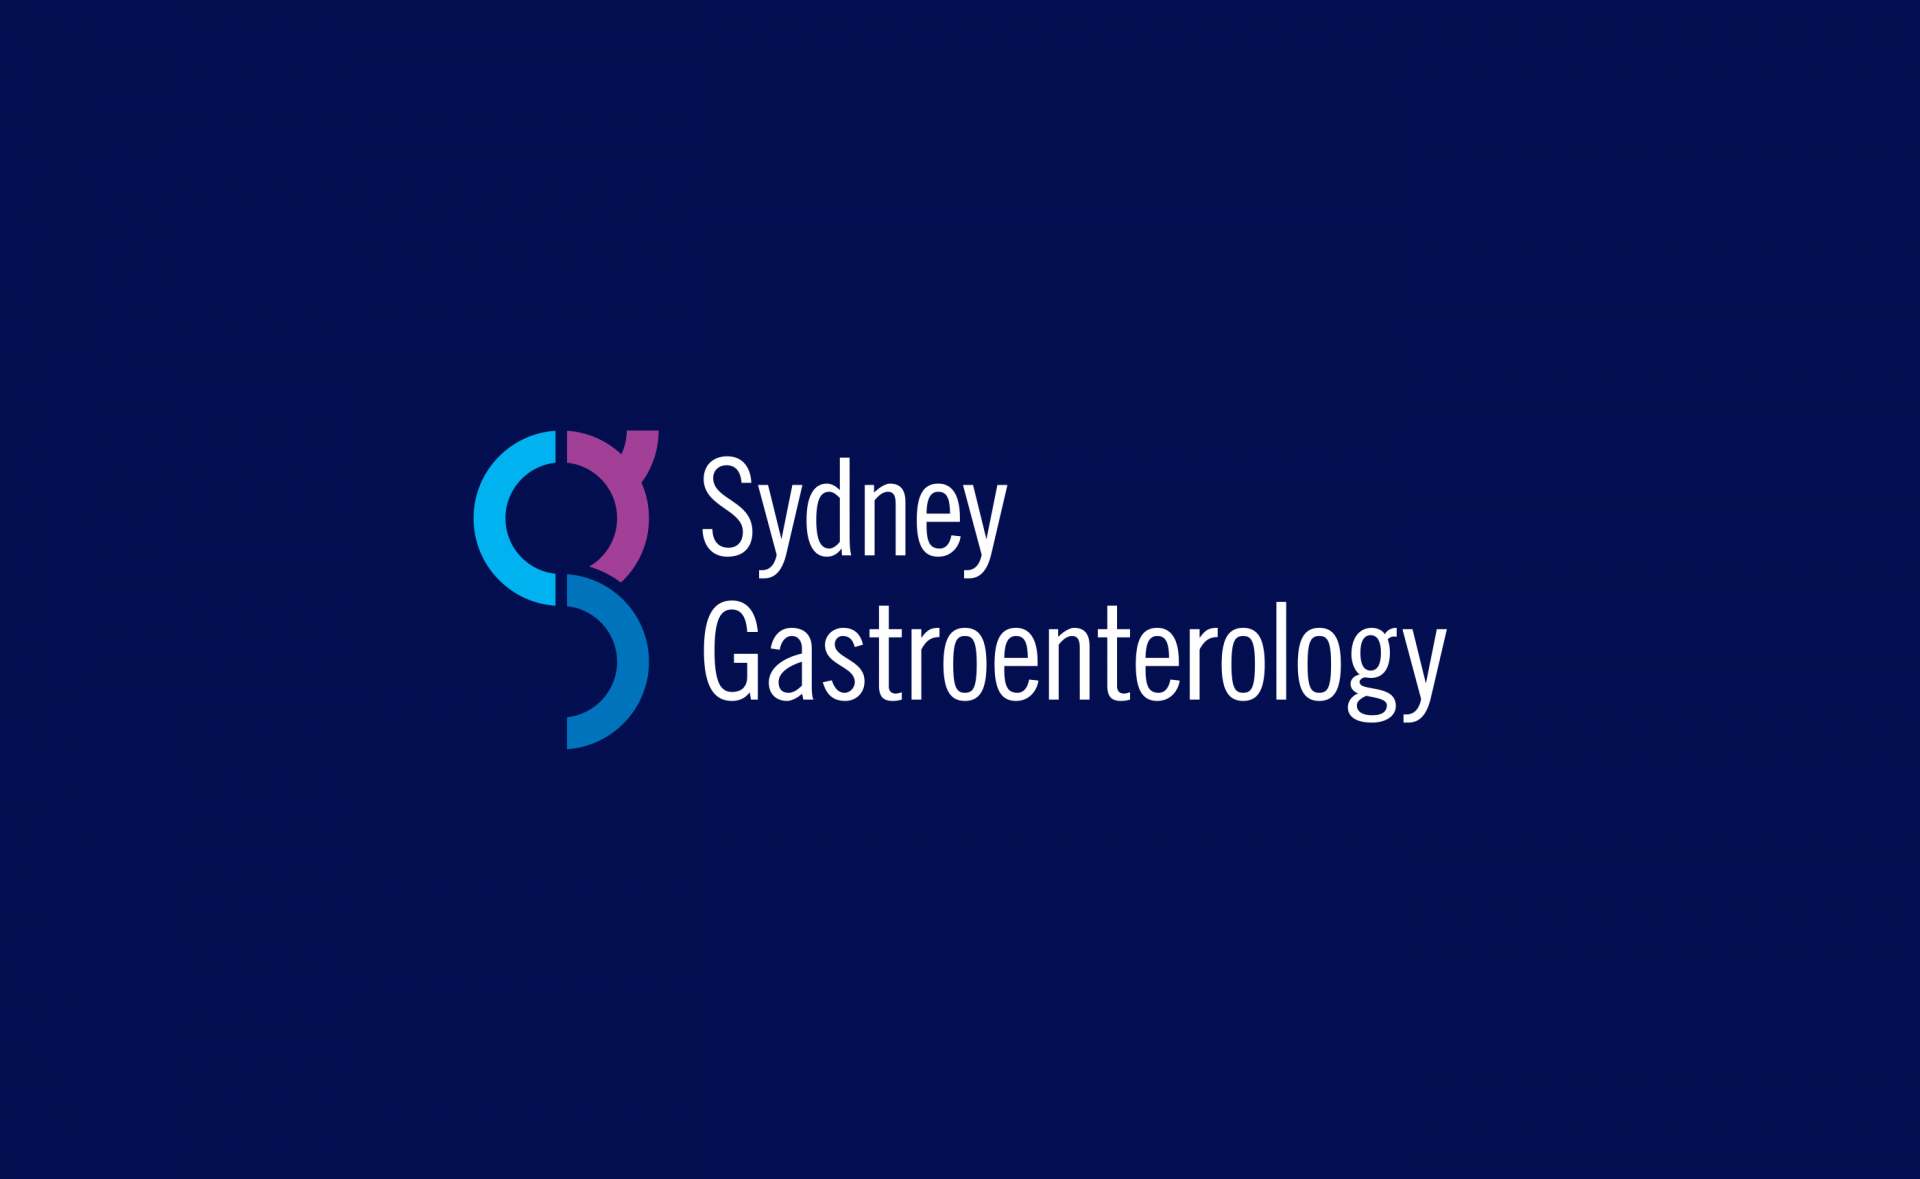 Sydney Gastroenterology